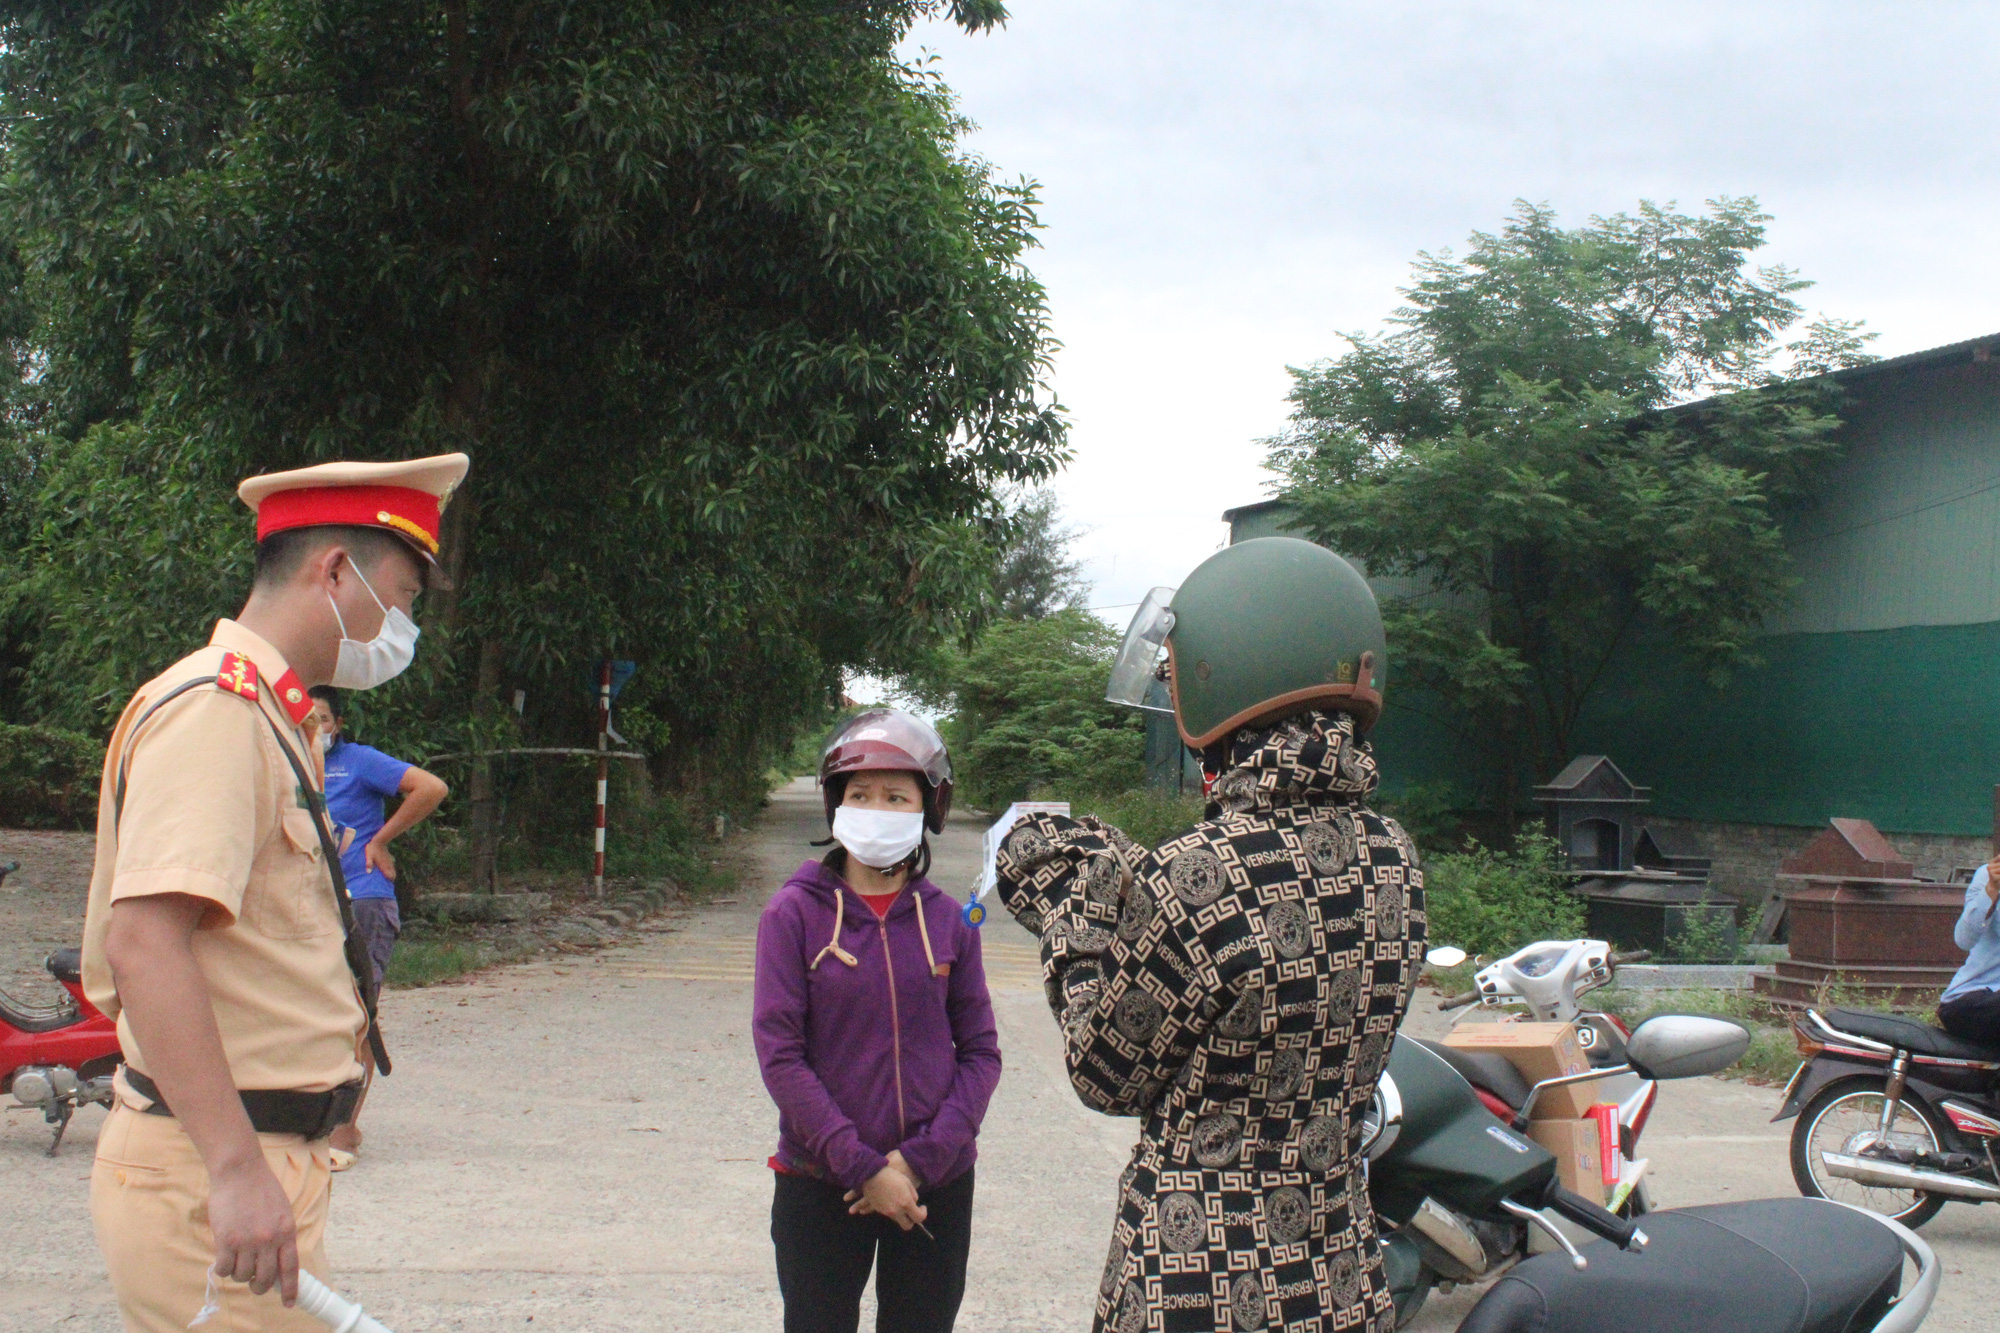 Hà Tĩnh: Người dân vội vã rời thành phố trước cách ly y tế - Ảnh 6.